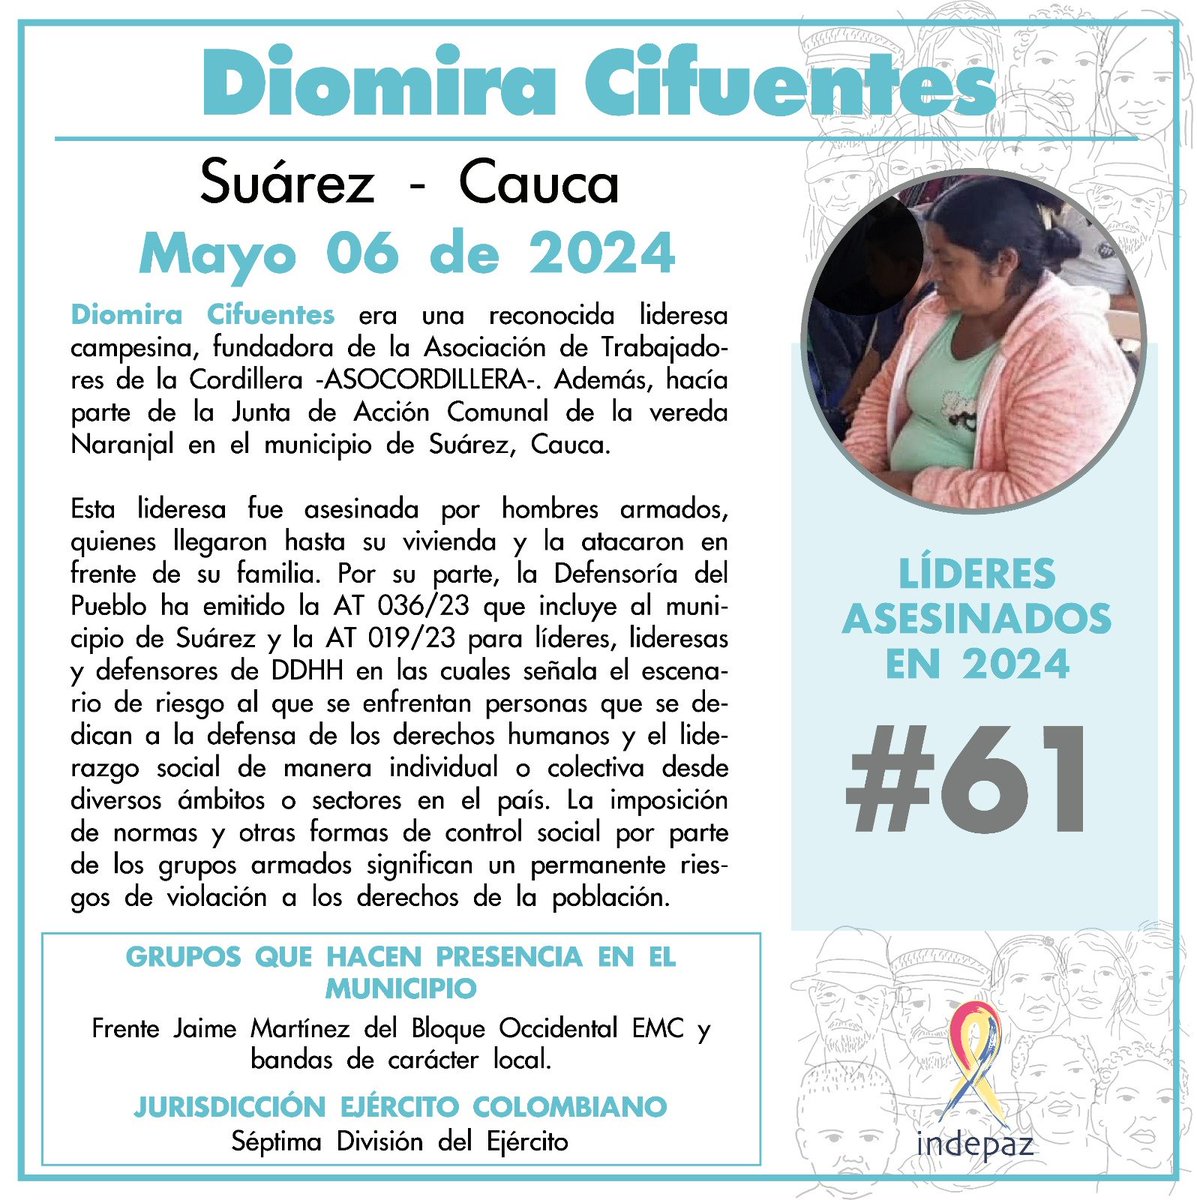 Diomira Cifuentes 06/05/24 Suárez, Cauca Diomira Cifuentes era una reconocida lideresa campesina, fundadora de la Asociación de Trabajadores de la Cordillera -ASOCORDILLERA-. Además, hacía parte de la Junta de Acción Comunal de la vereda Naranjal en el municipio de Suárez, Cauca